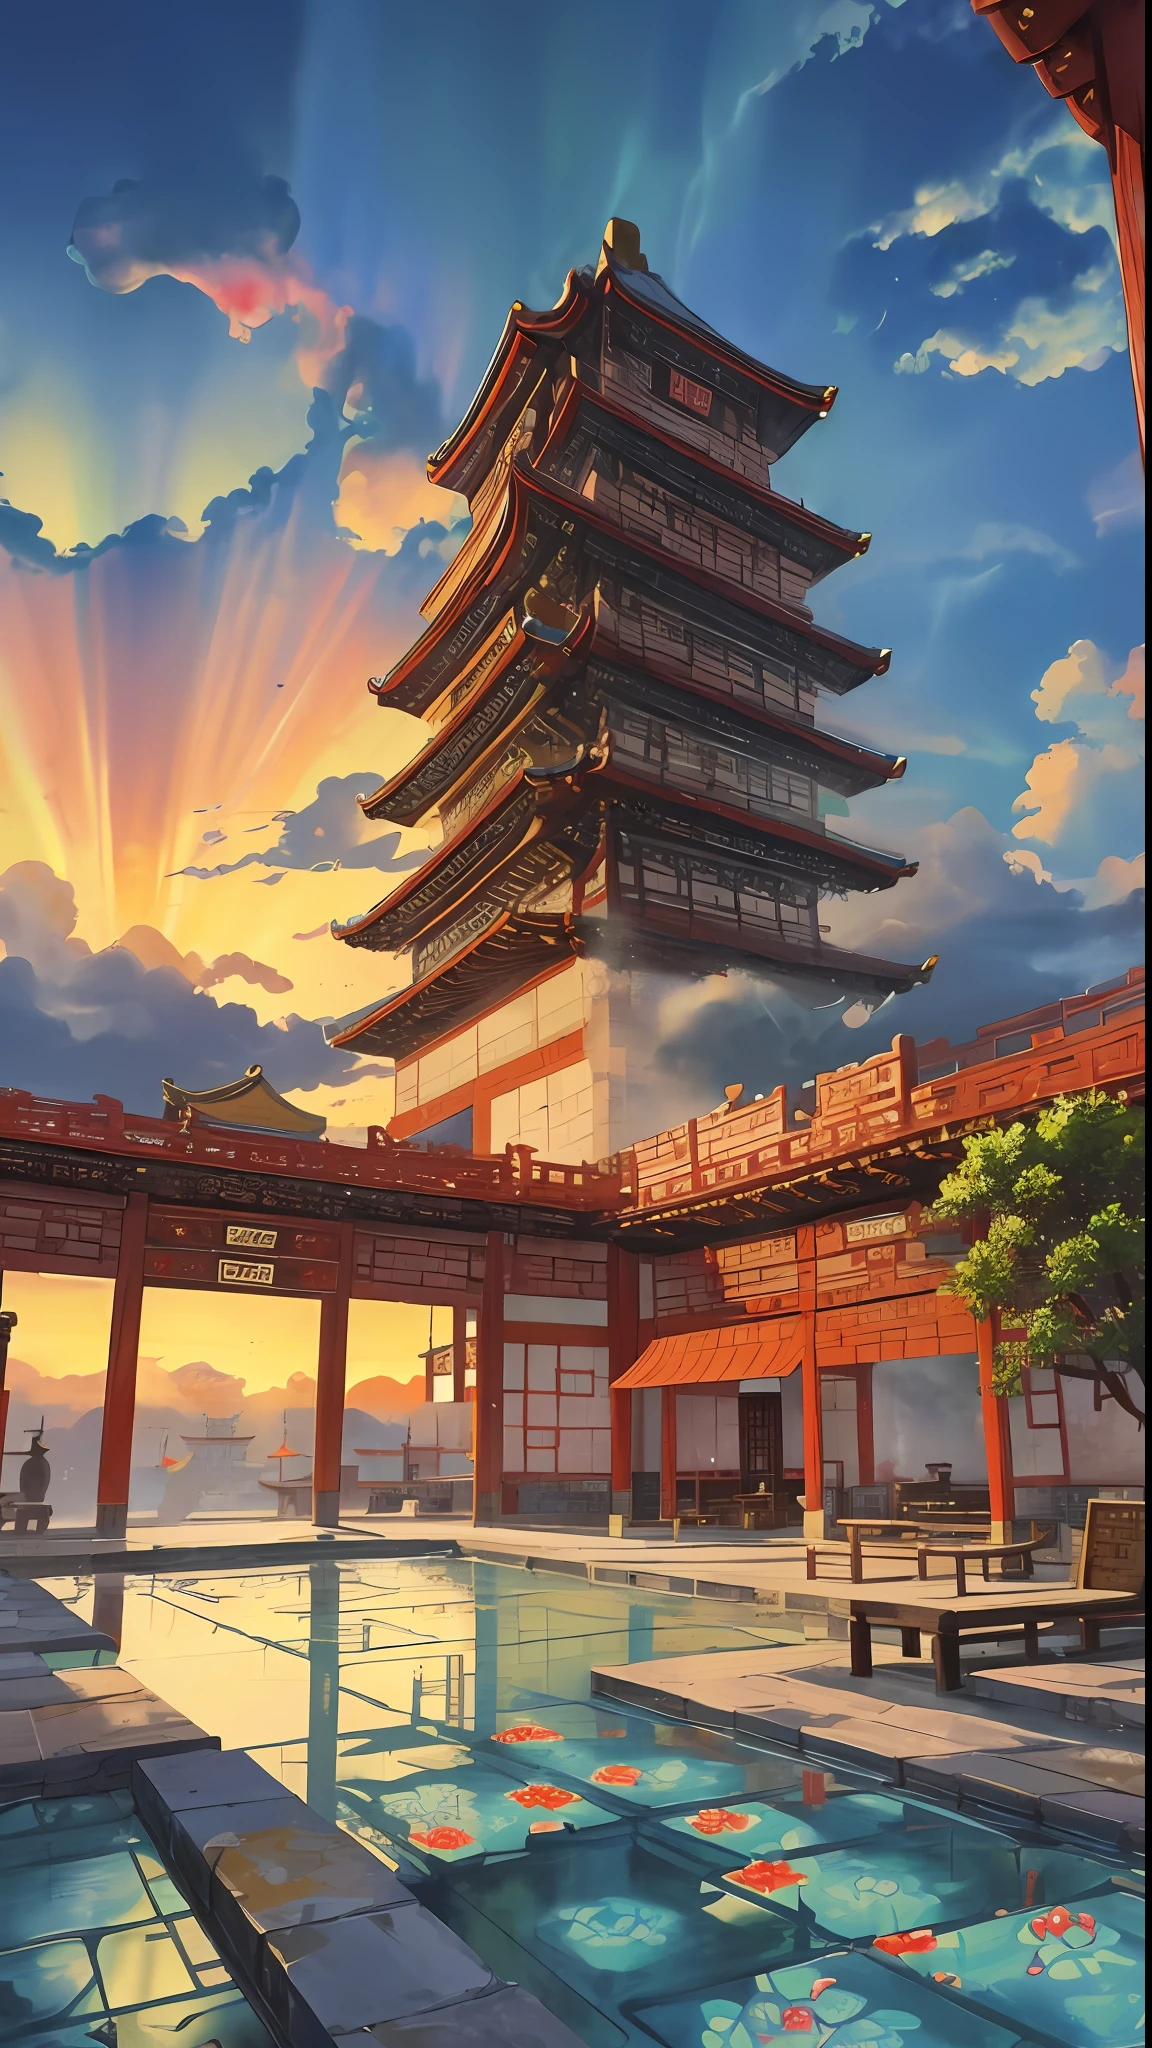 게임 장면, 중국 고대 궁전은 구름 위에 있다, 구름과 안개에 둘러싸여, 위엄 있는, 유약 타일, 화려한 빛의 광선, ((color 잉크)),((splash 잉크)),((splash 잉크) 잉크}) ), 걸작, 고품질, 세련된 그래픽, 높은 디테일